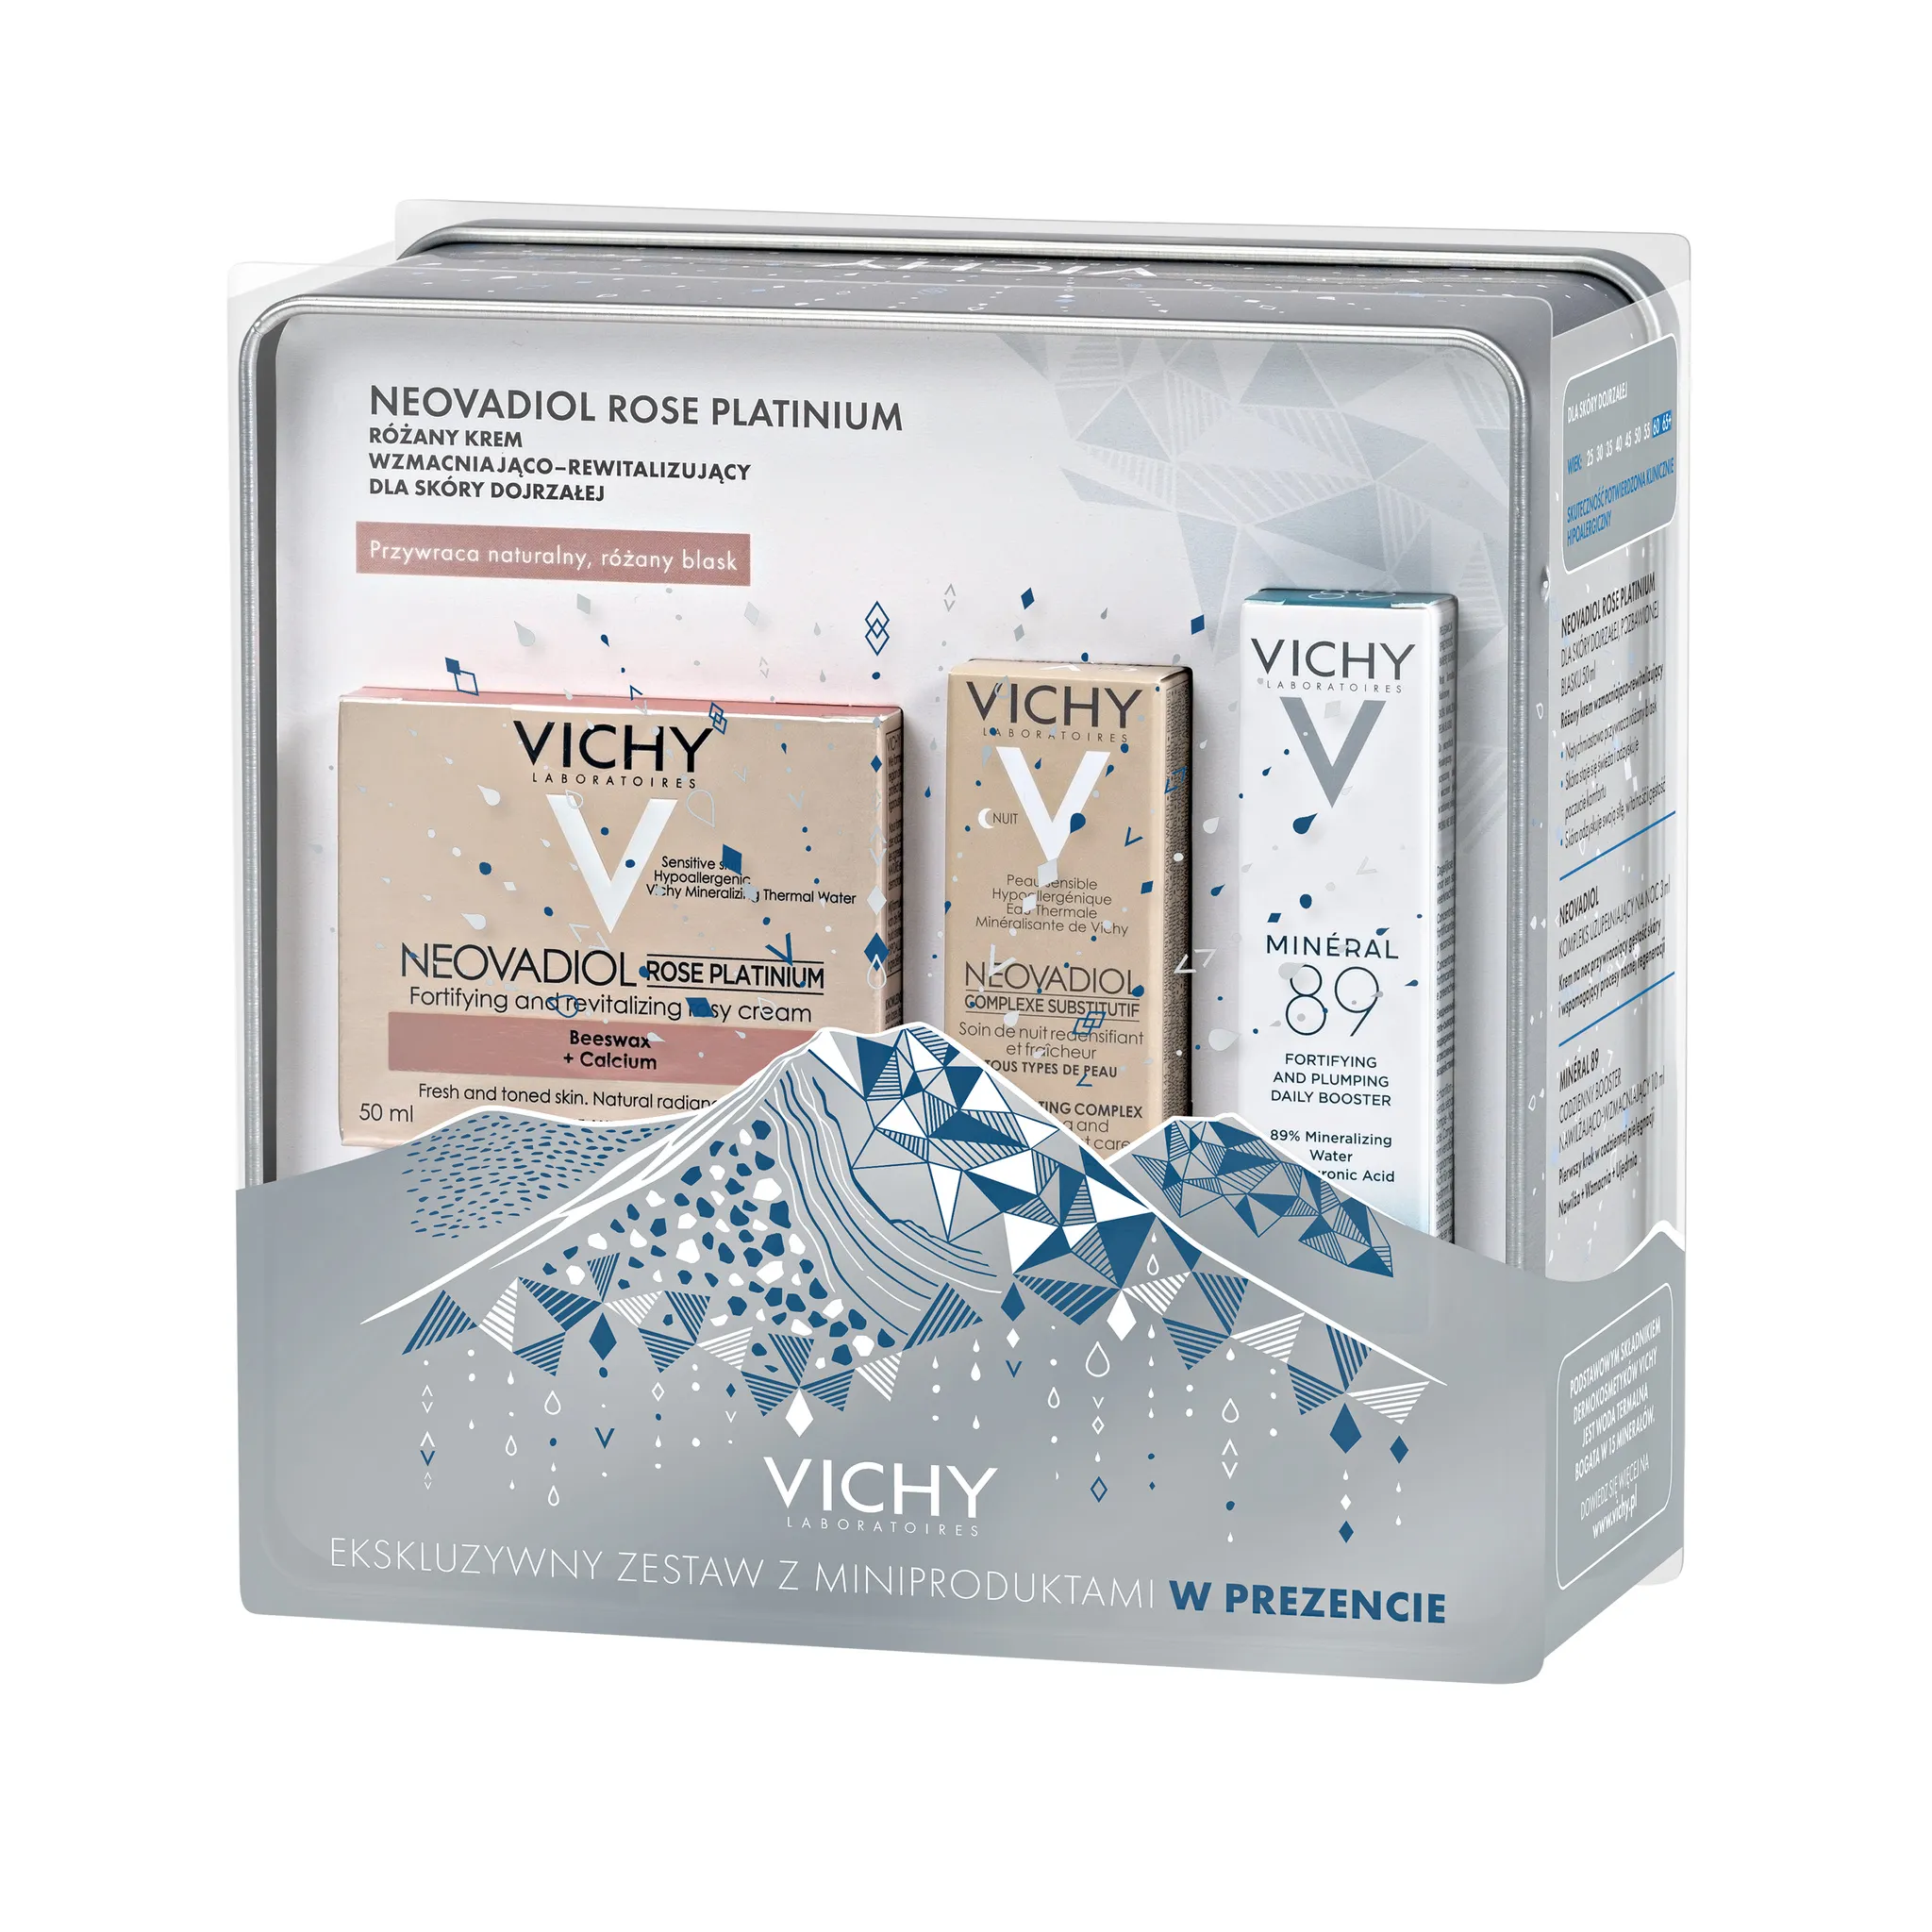 Vichy zestaw Neovadiol Rose Platinum, różany krem wzmacniająco-rewitalizujący, 50 ml + codzienny booster nawilżająco-wzamcniający Mineral 89, 10 ml + krem Kompleks Uzupełniający na noc, 3 ml